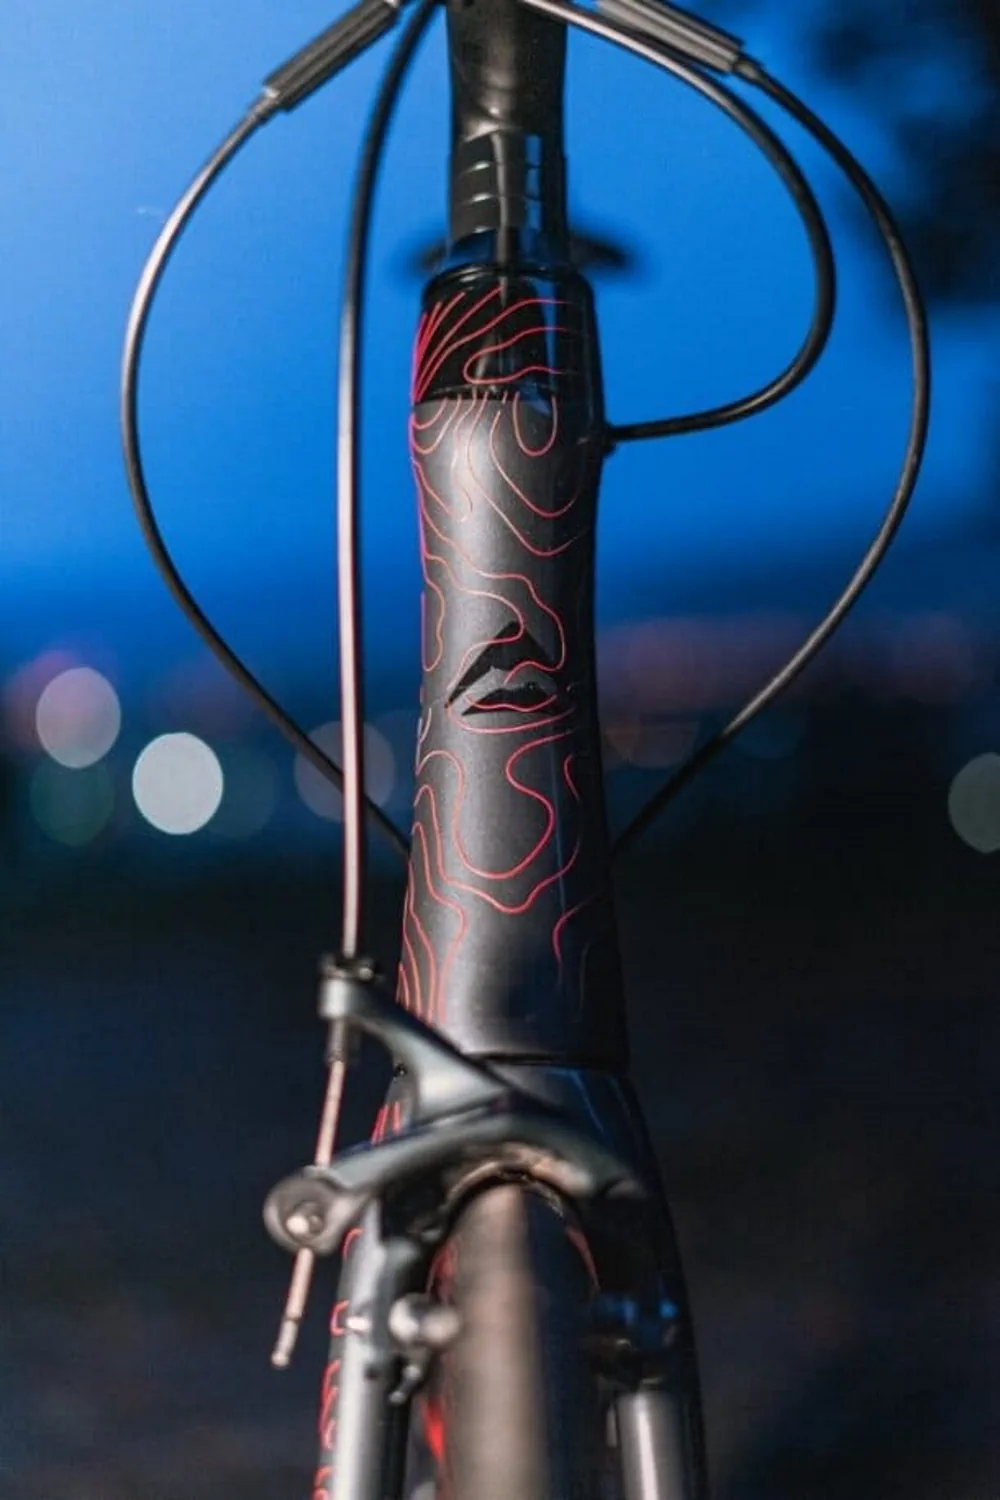 Widok przedniej rury roweru z czerwoną grafiką